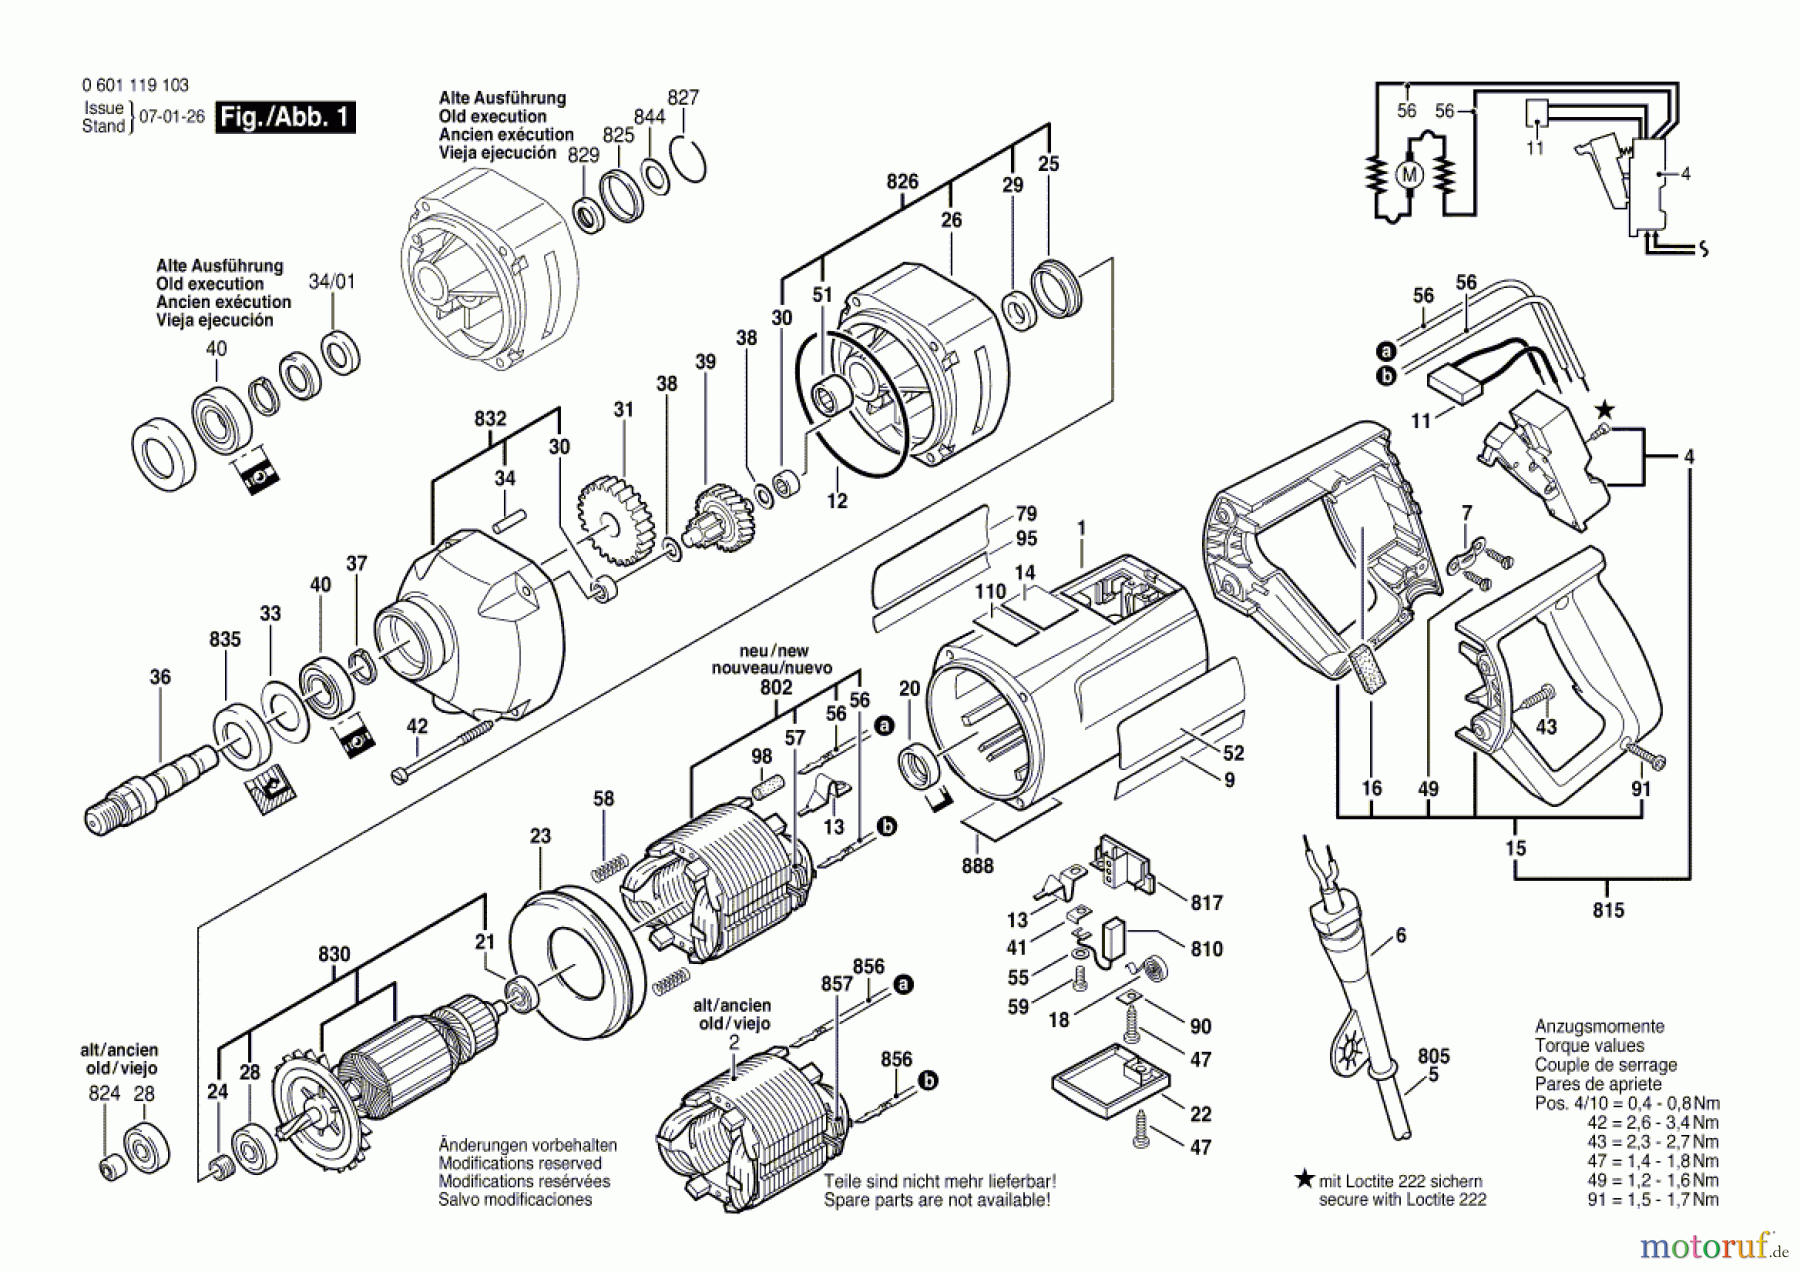  Bosch Werkzeug Bohrmaschine GBM 13 Seite 1